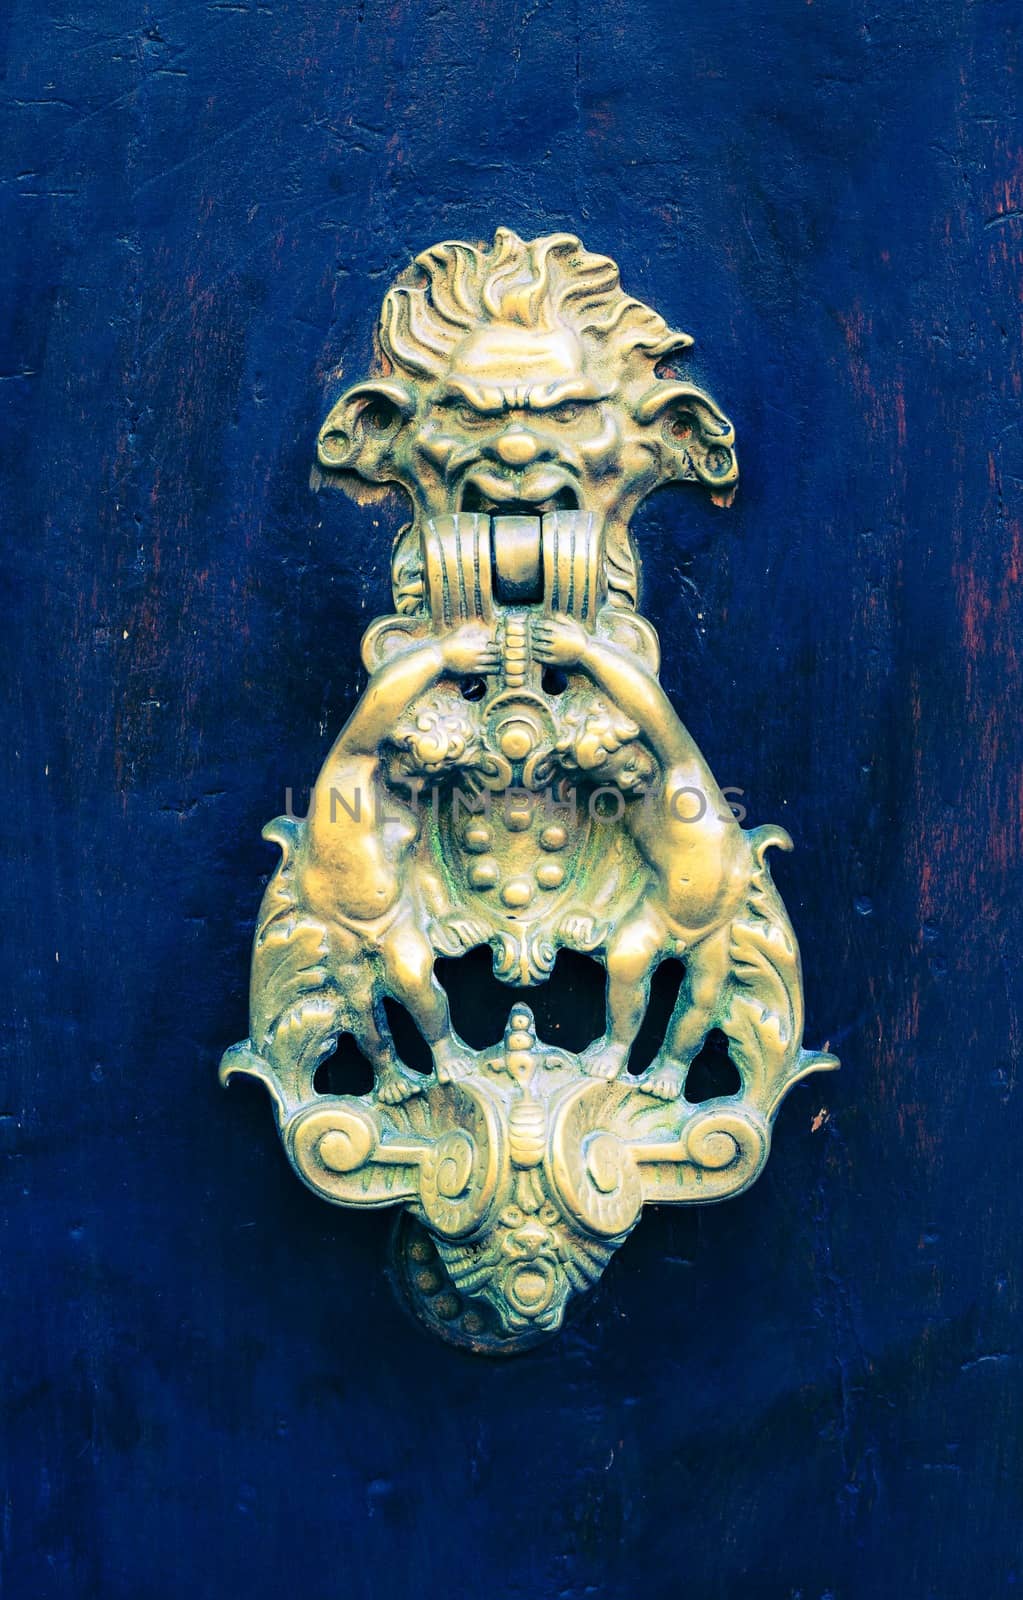 Door knocker by Onigiristudio